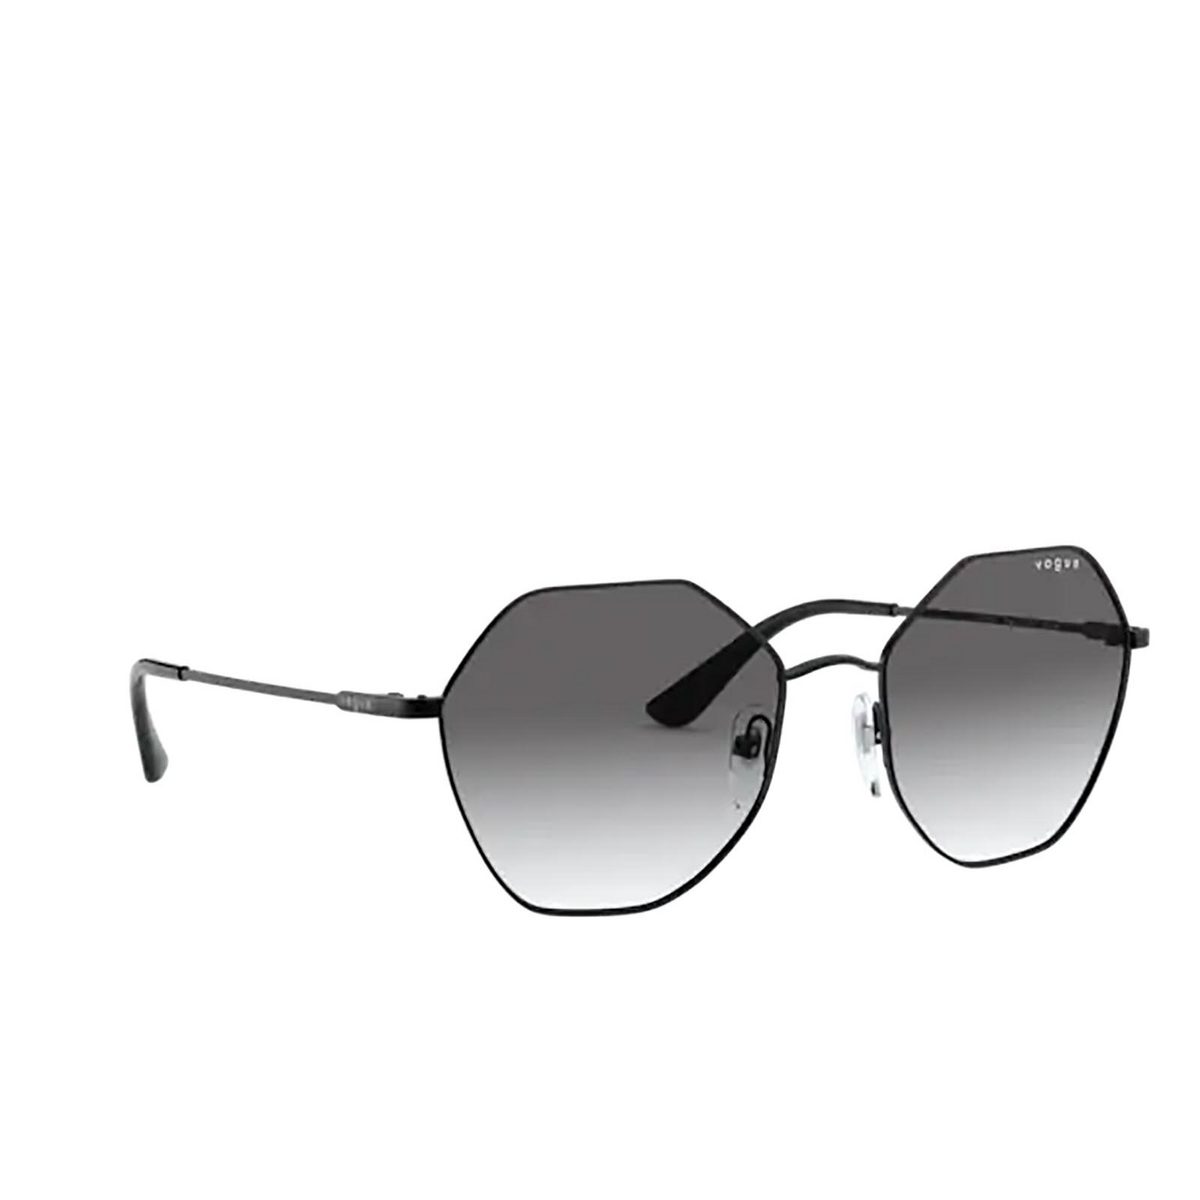 Vogue® Irregular Sunglasses: VO4180S color Black 352/11 - three-quarters view.